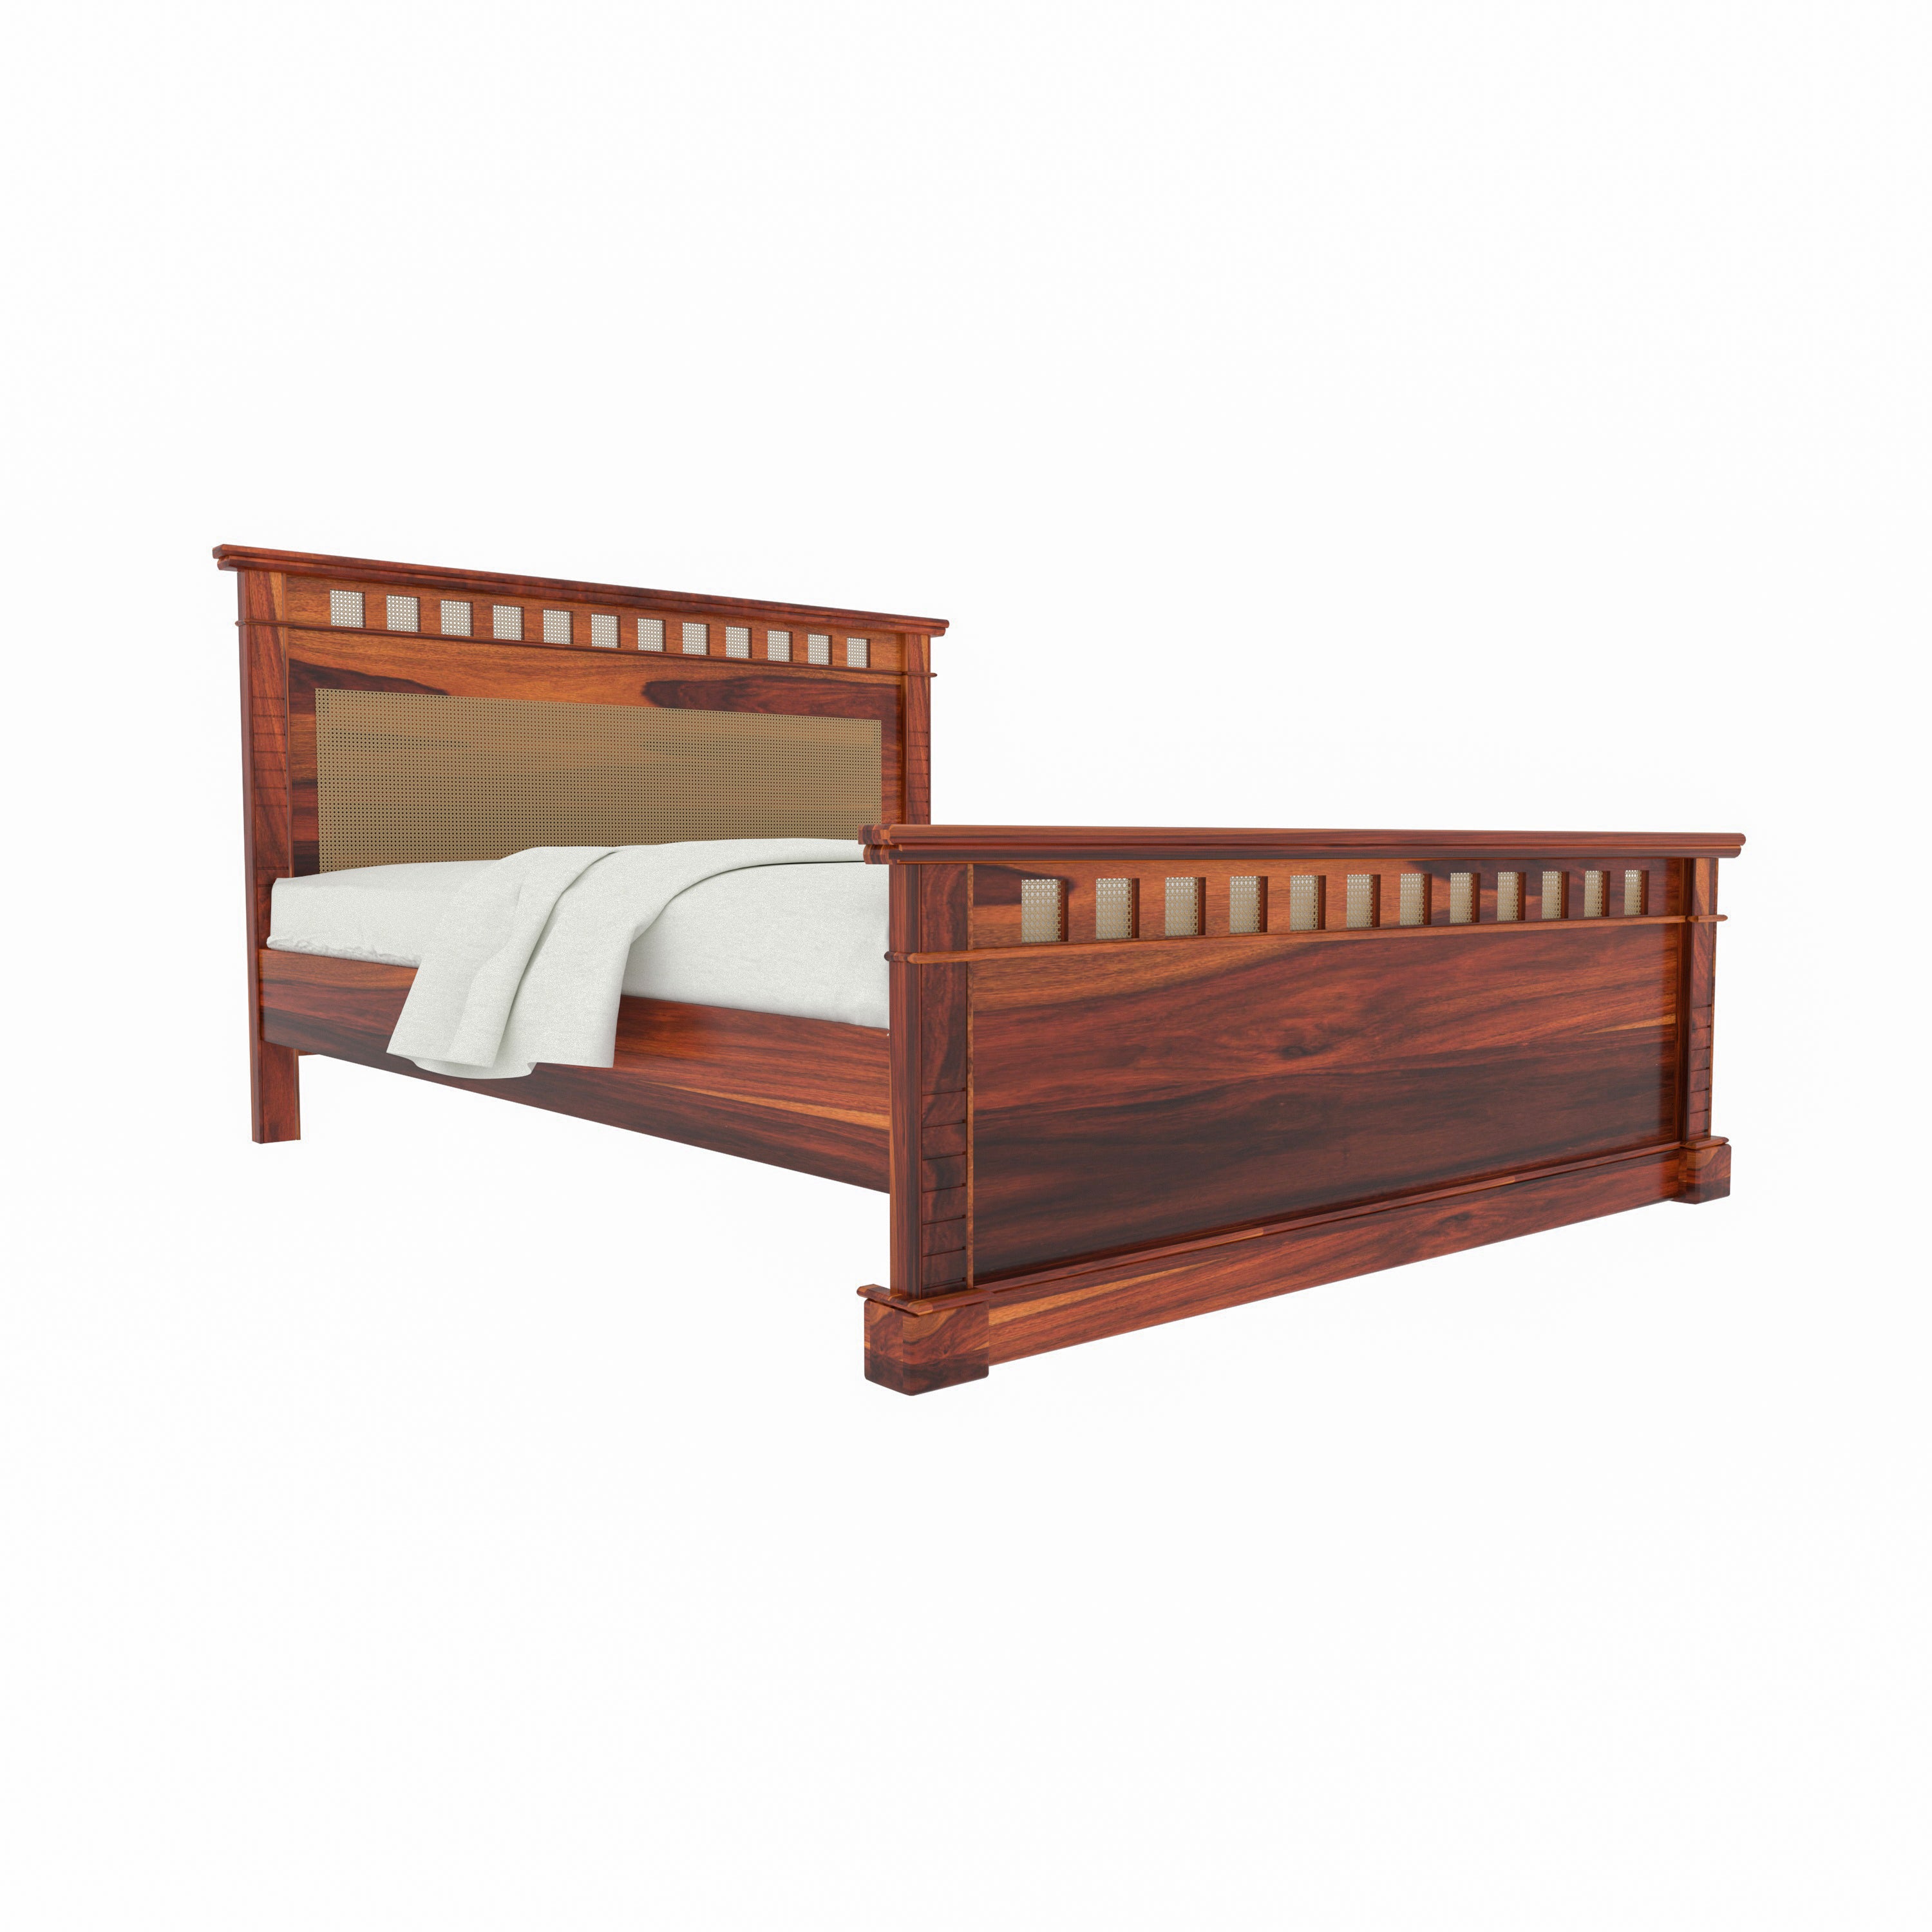 Vintage Denver Style Wooden Handmade Bed with Storage Bedside Bedroom Furniture Sets